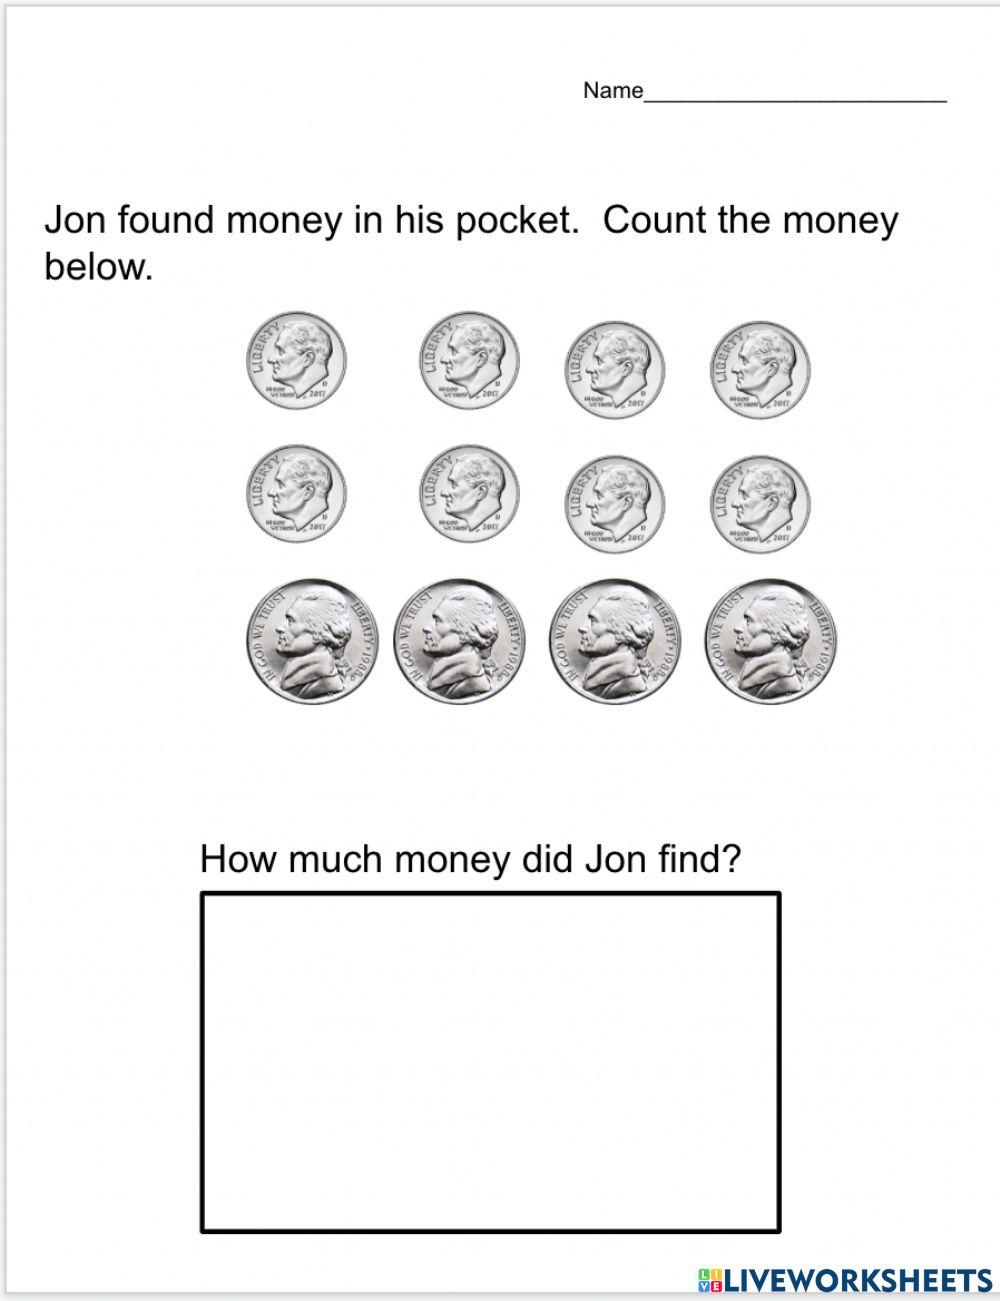 How much was found in Jon's pocket?